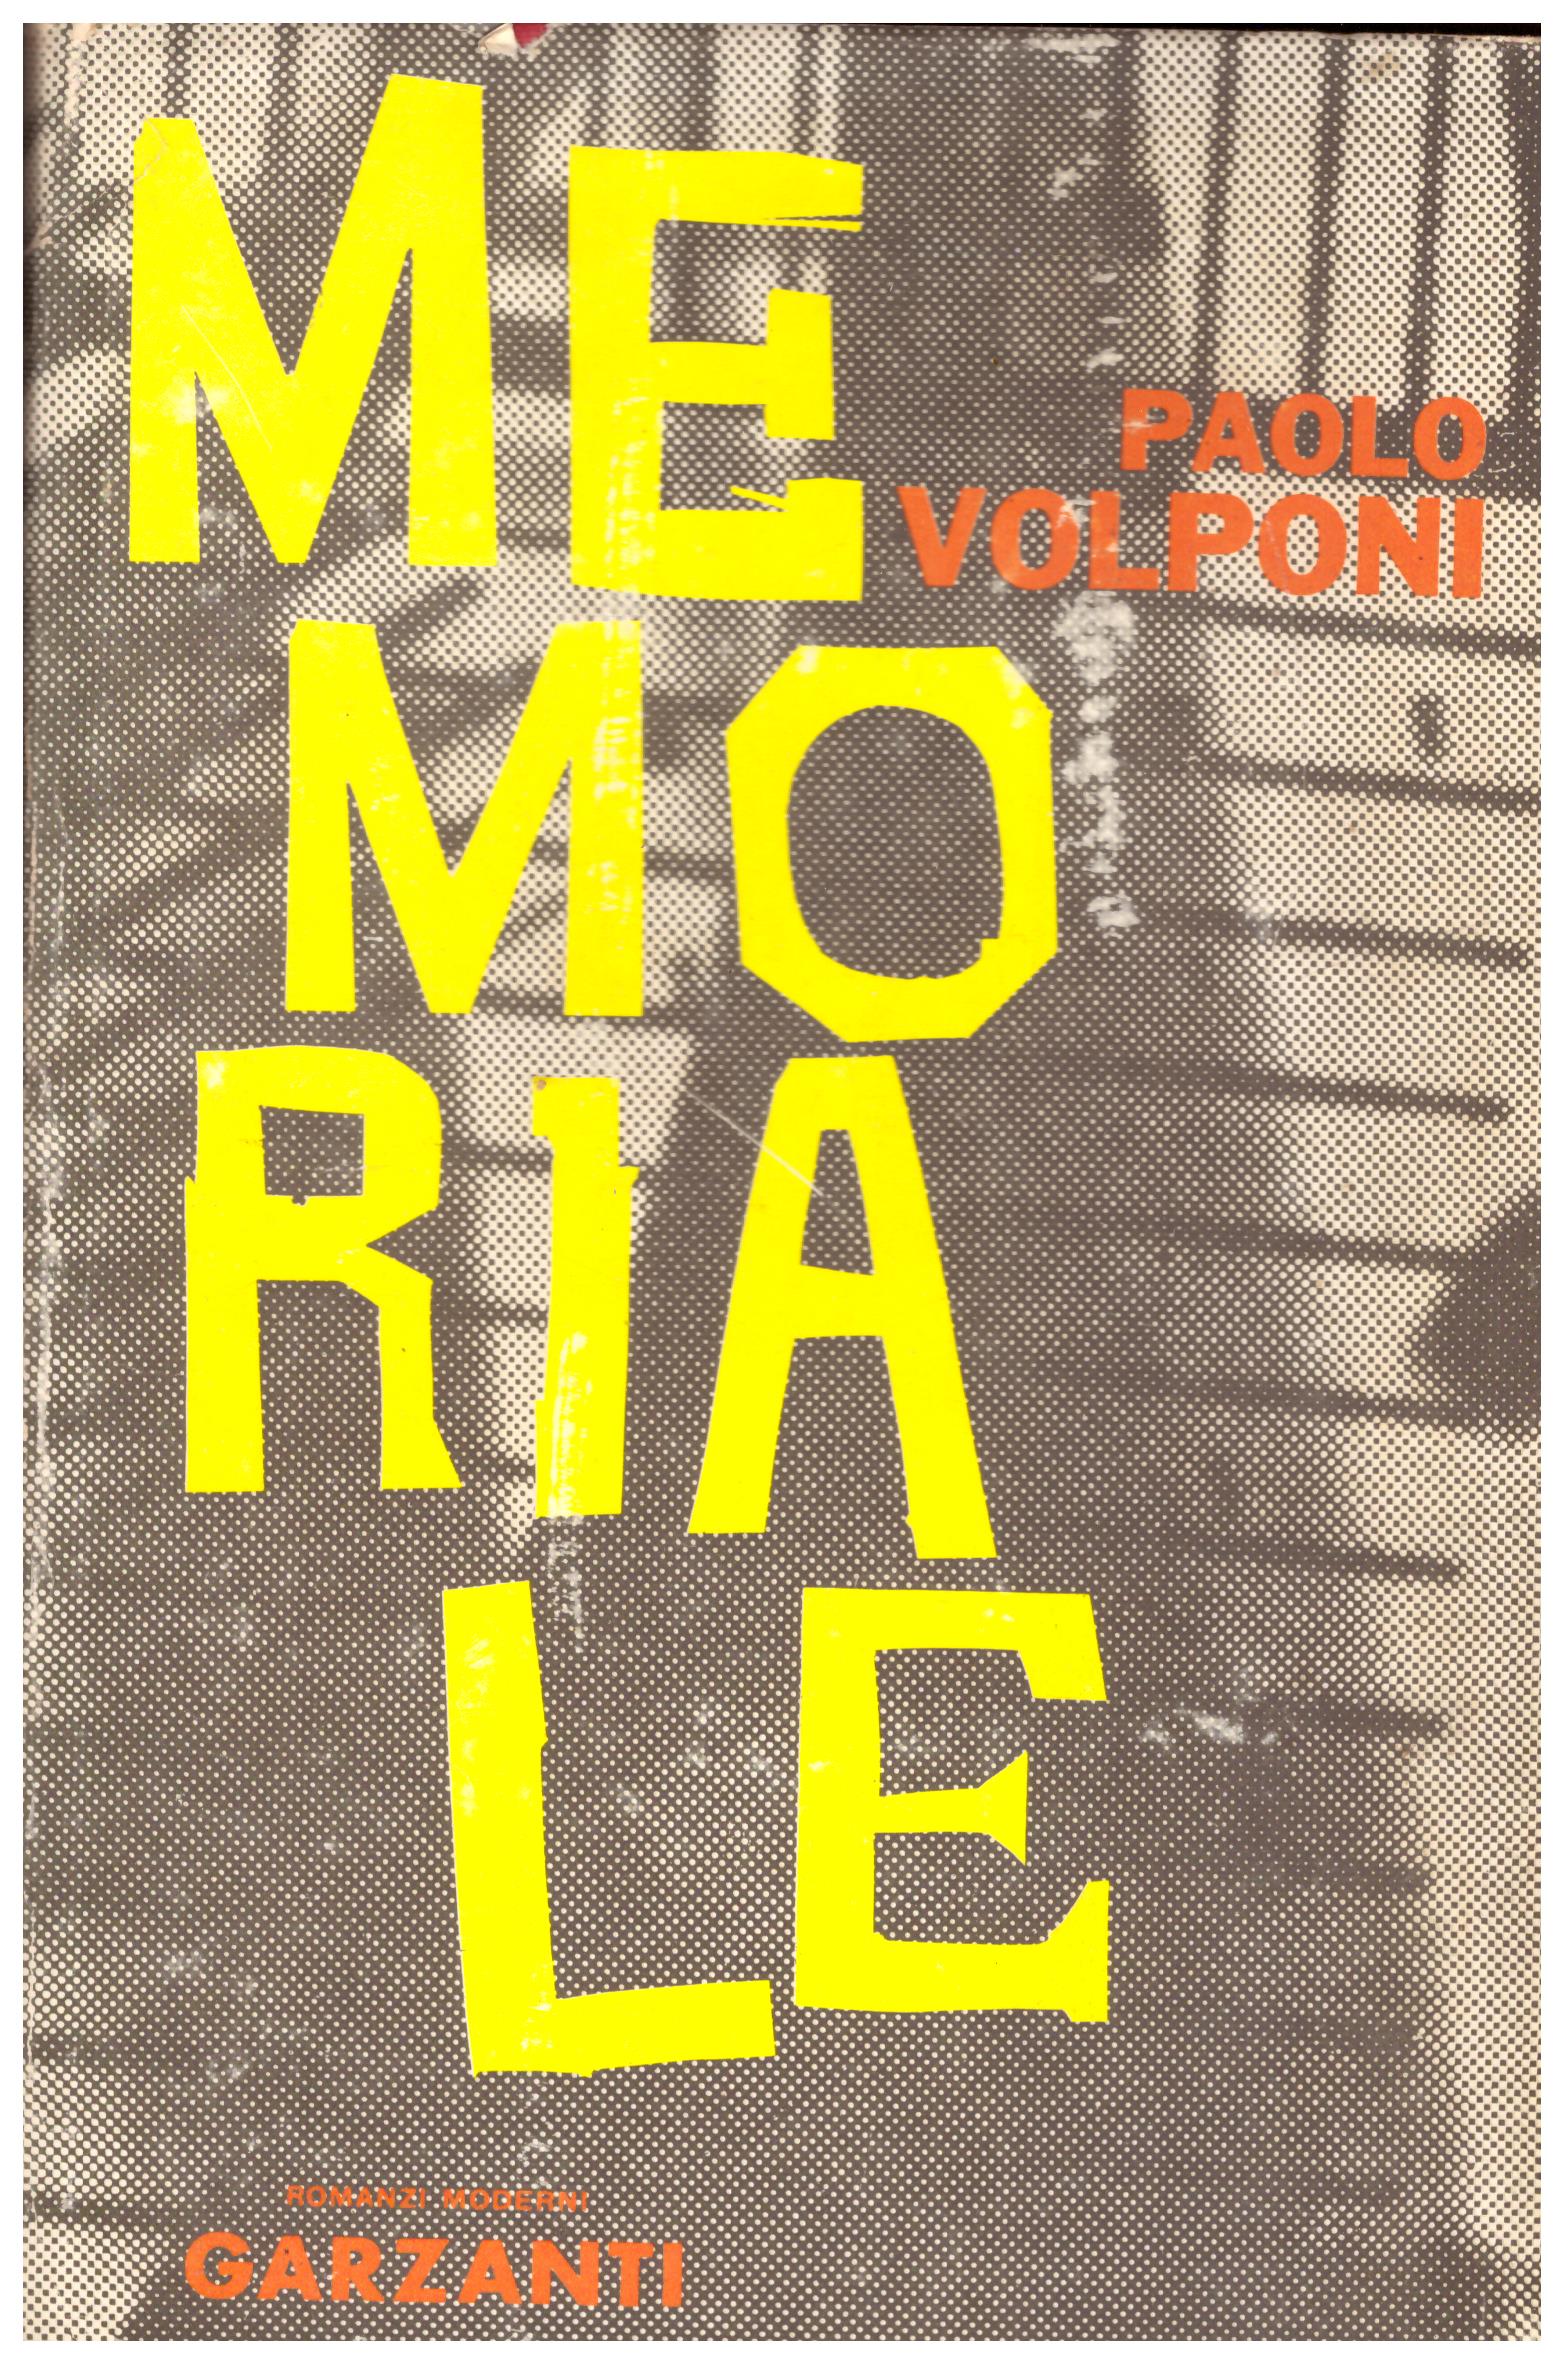 Titolo: Memoriale Autore: Paolo Volponi Editore: Garzanti 1962